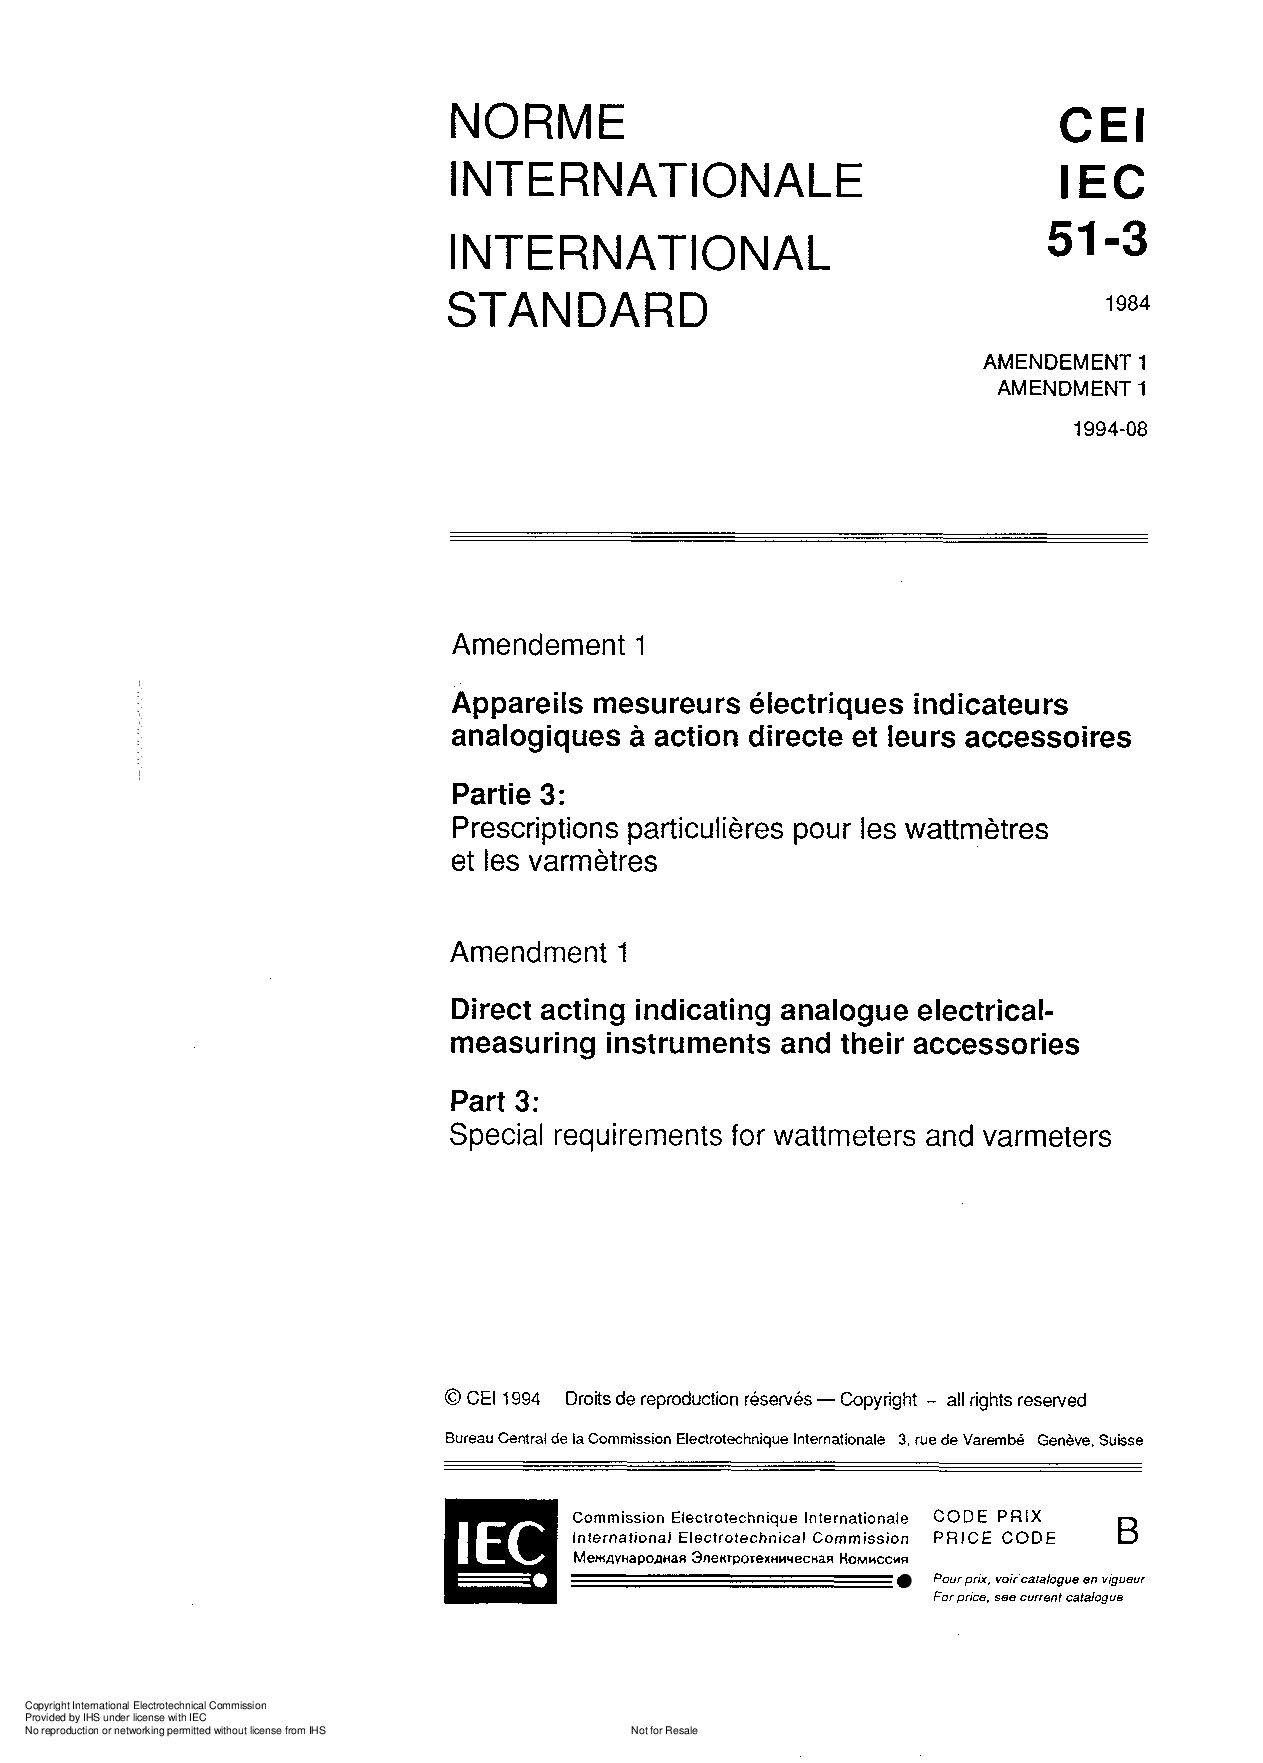 IEC 60051-3:1984